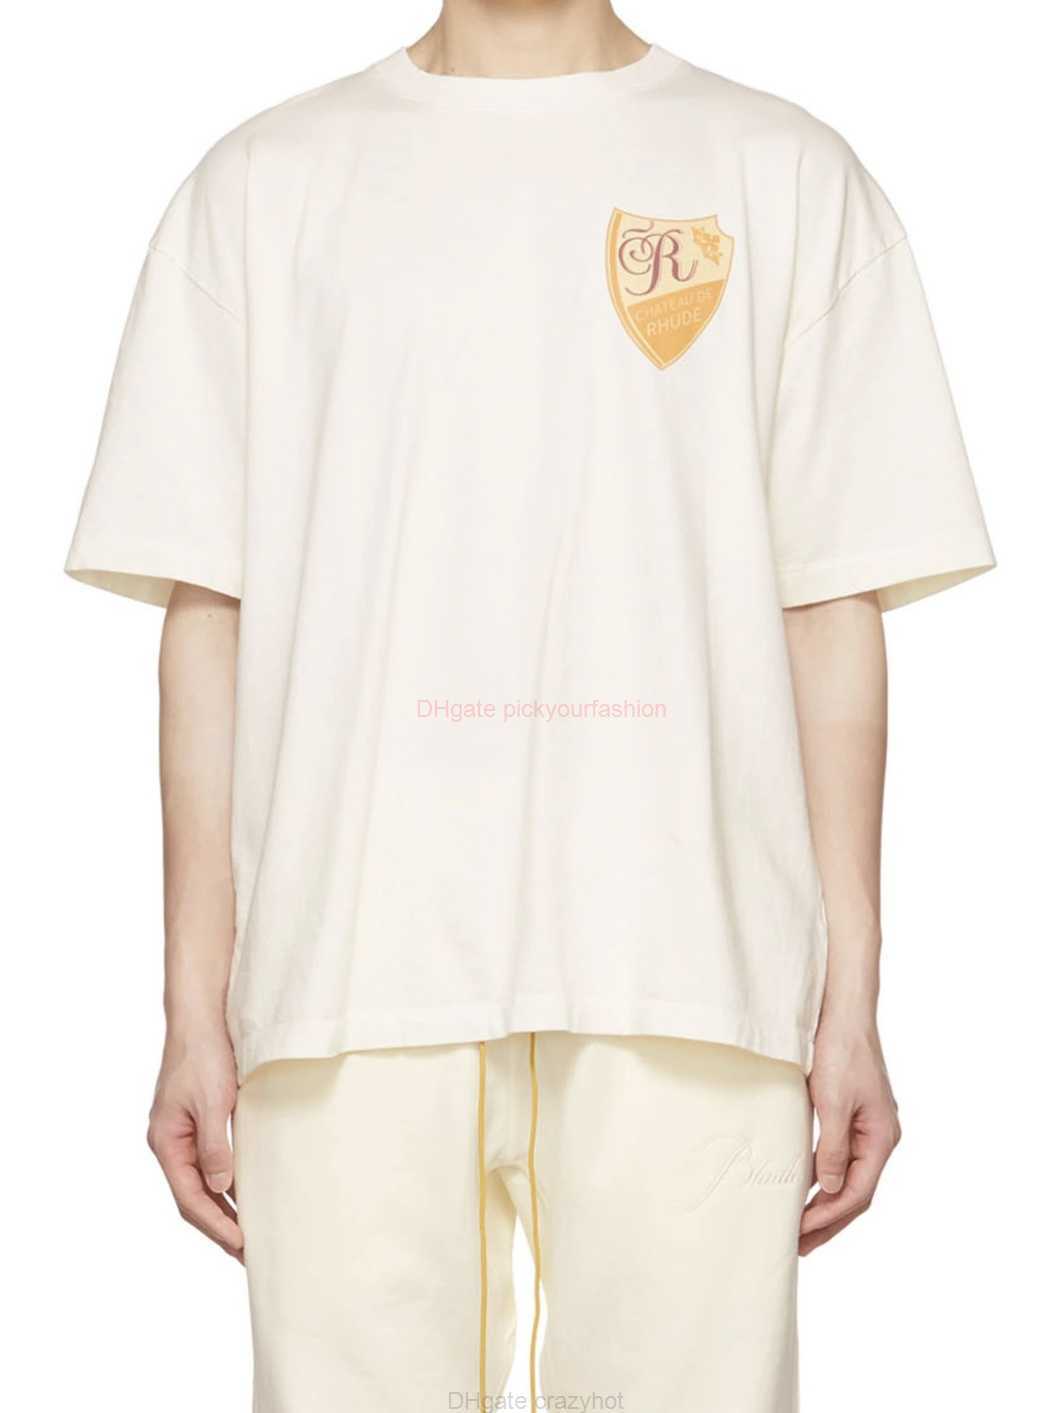 Projektant Fashion Clothing Tees Tshirt H8026 Rhude Yellow Emblem Printed T-shirt bawełniane tope streetwearne